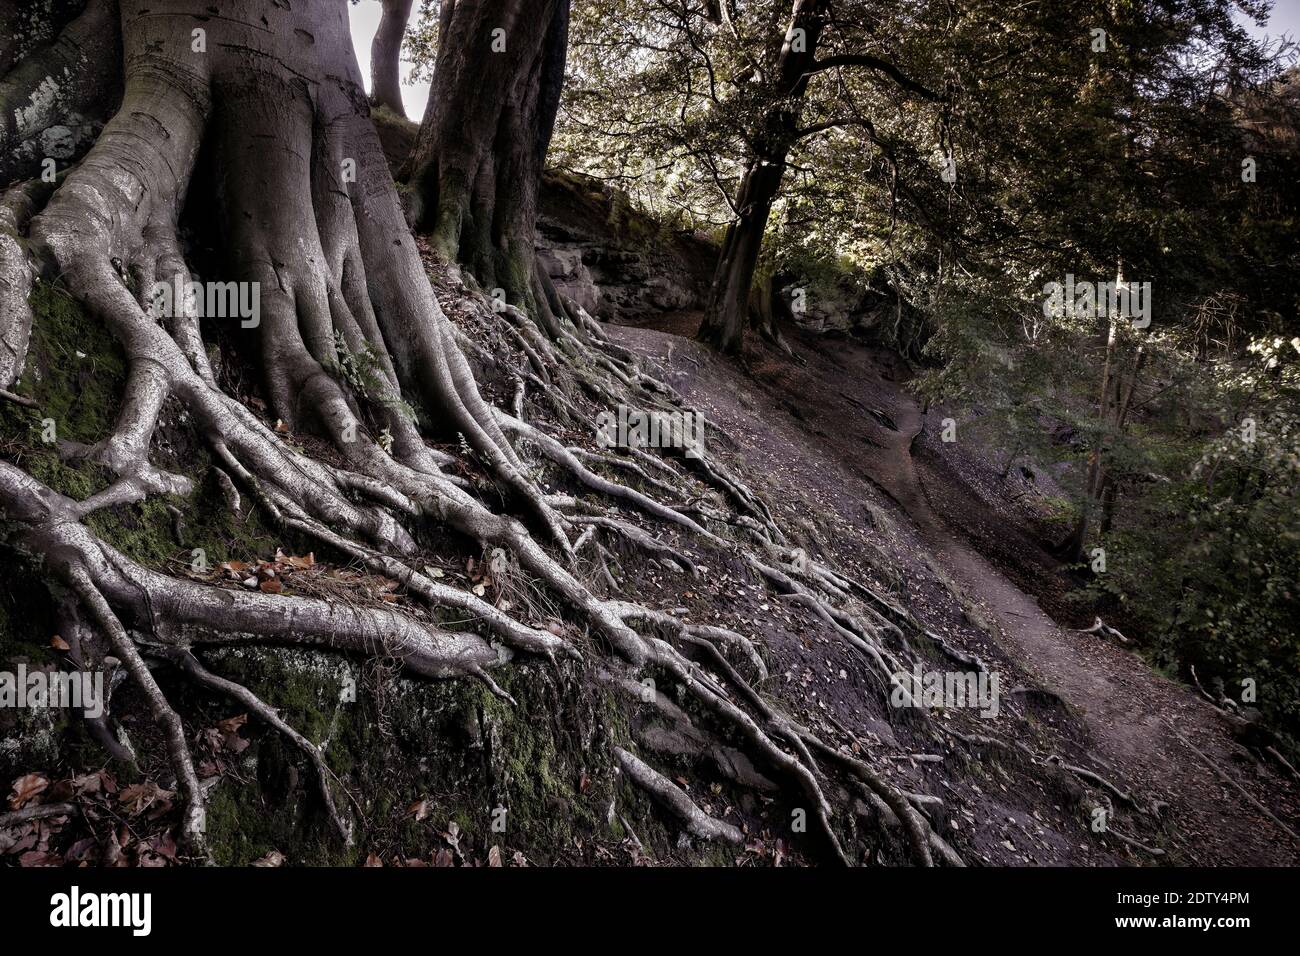 Raíces y crags del árbol de haya sobre el sendero, Alderley Edge, Cheshire, Inglaterra, Reino Unido Foto de stock